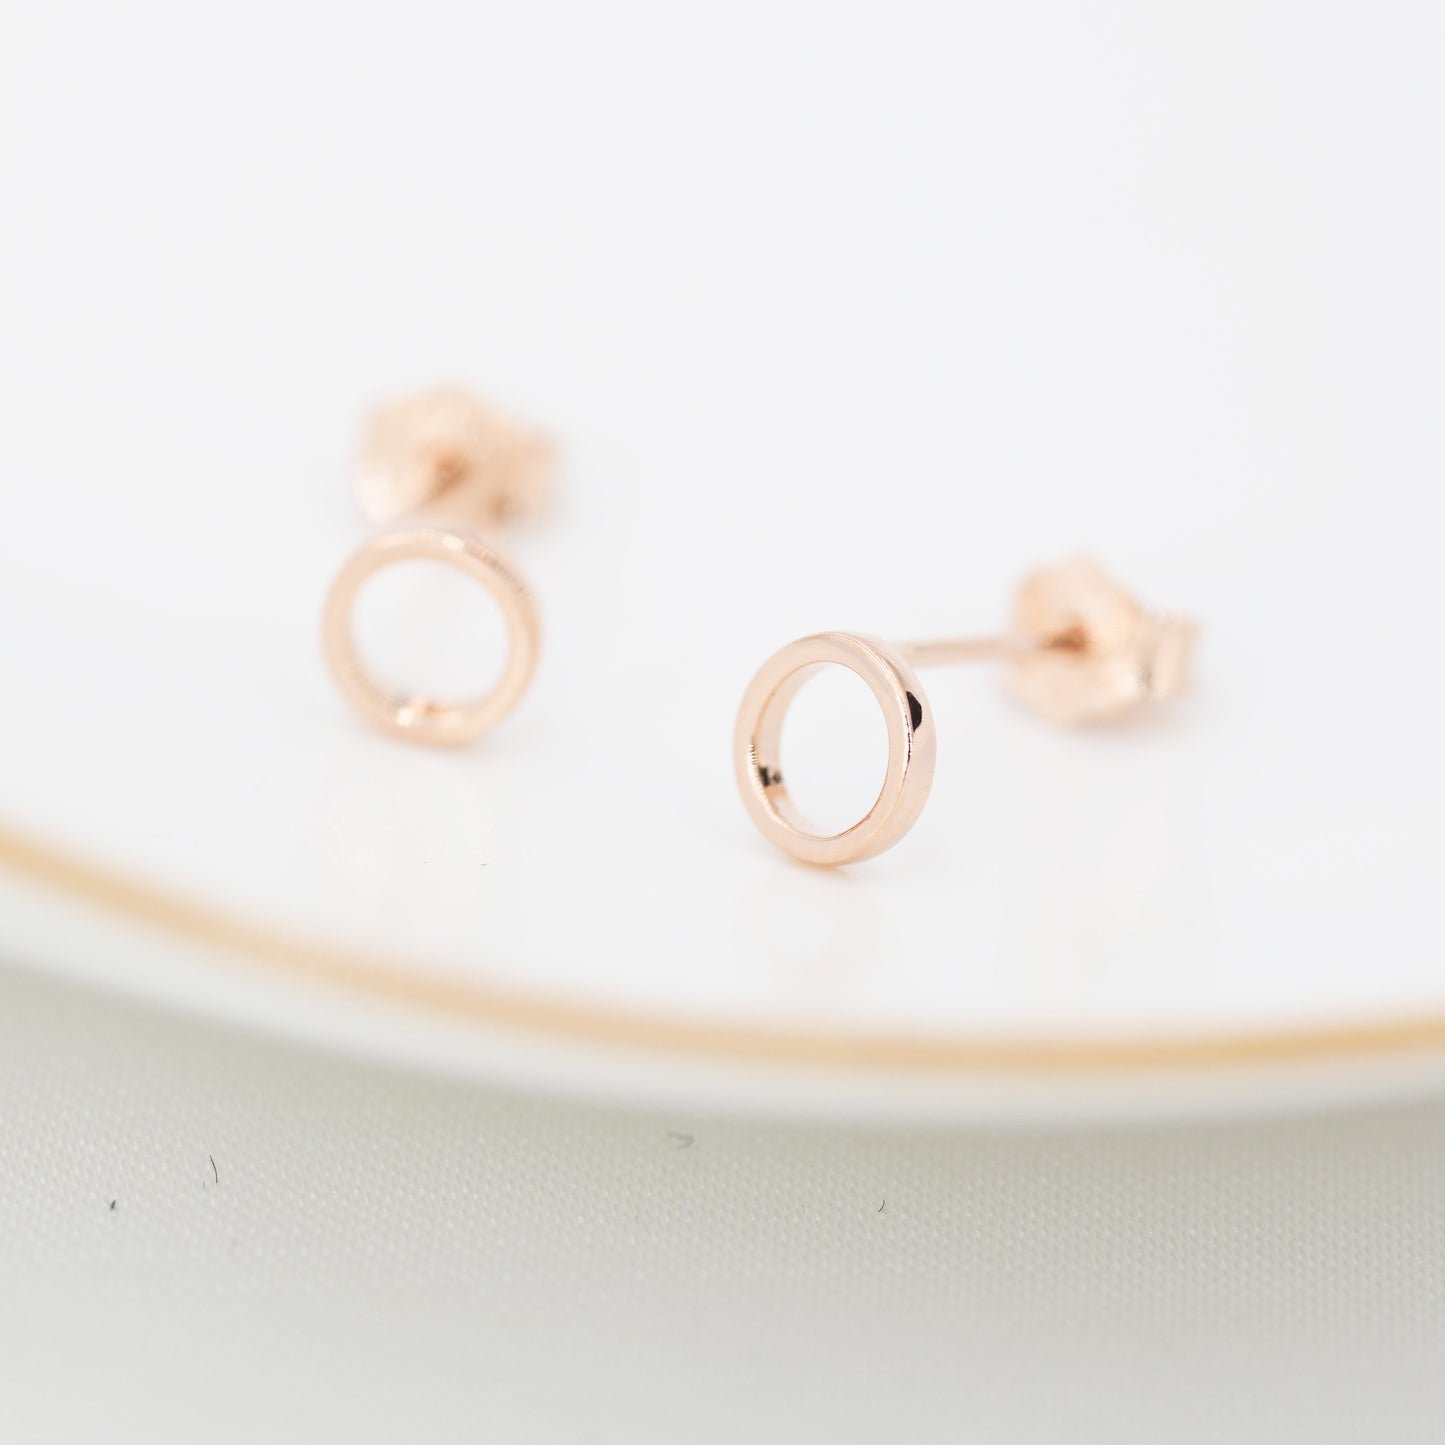 Tiny Open Circle Stud Earrings in Sterling Silver, Silver, Gold or Rose Gold, Circle Earrings, Geometric Minimalist Earrings